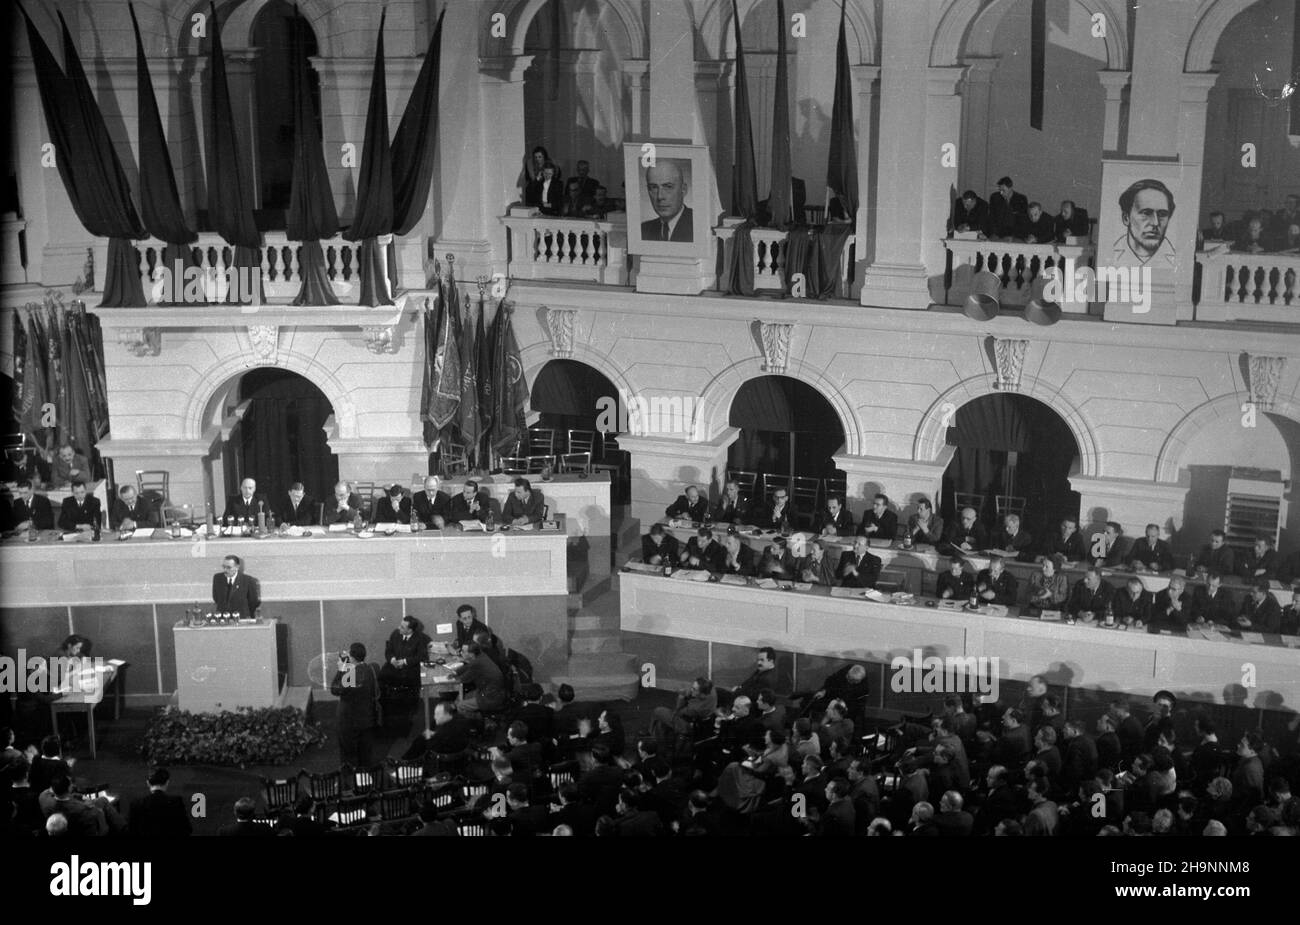 Warszawa, 1948-12-15. Kongres Zjednoczeniowy PPR (Polska Partia Robotnicza) i PPS (Polska Partia Socjalistyczna), 15-21 XII, w auli Politechniki Warszawskiej. I Zjazd PZPR (Polska Zjednoczona Partia Robotnicza). ka  PAP      Warsaw, Dec. 15, 1948. The Unification Congress of the Polish Worker Party (PPR) and the Polish Socialist Party (PPS) held debates at Warsaw Technical University on December 15-21. The 1st Congress of the Polish United Worker Party (PZPR).  mw  PAP Stock Photo